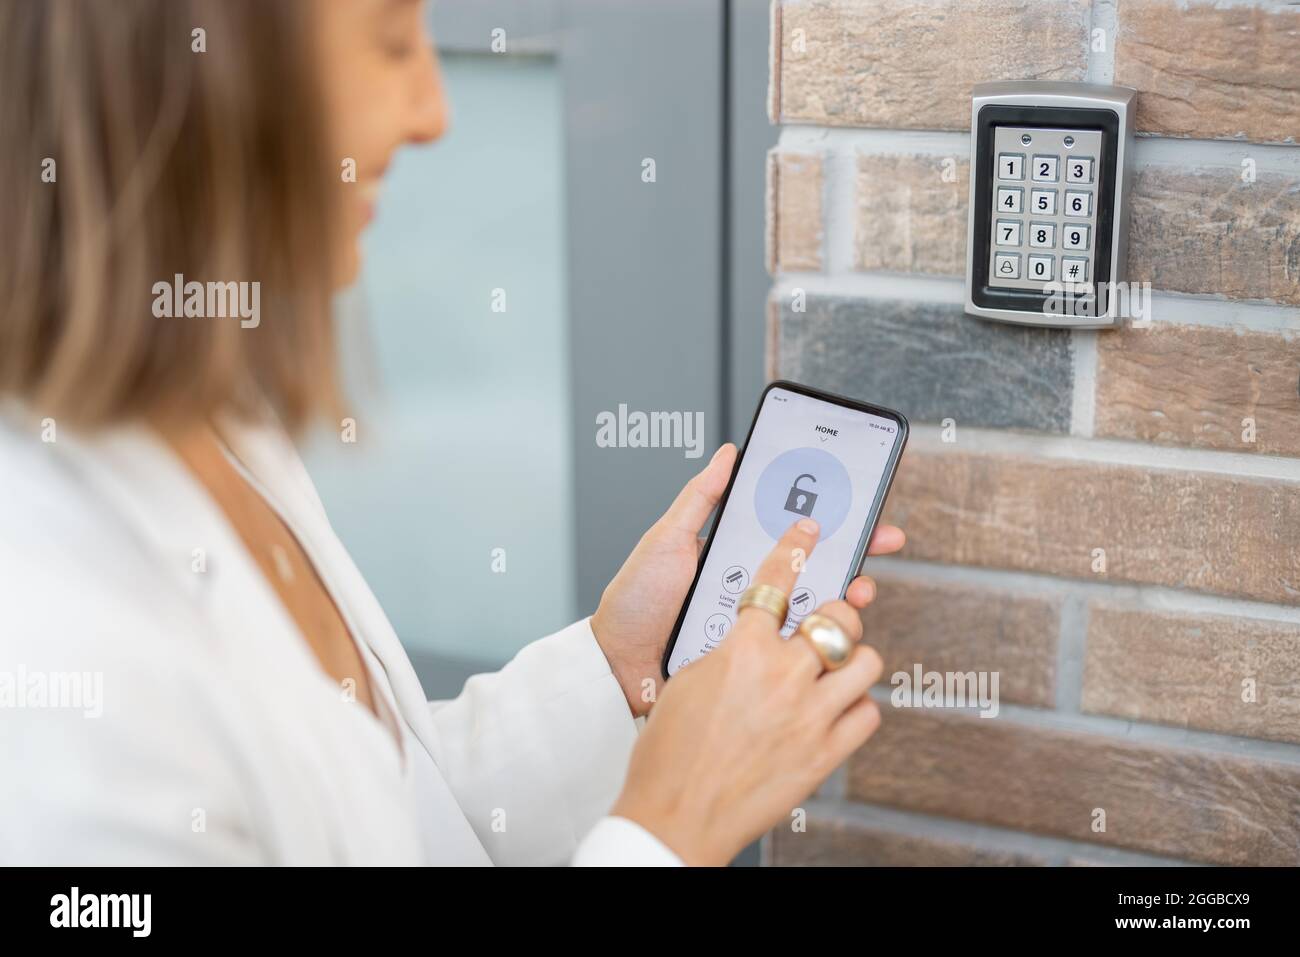 Ouverture de la porte avec un smartphone et un clavier au mur Photo Stock -  Alamy